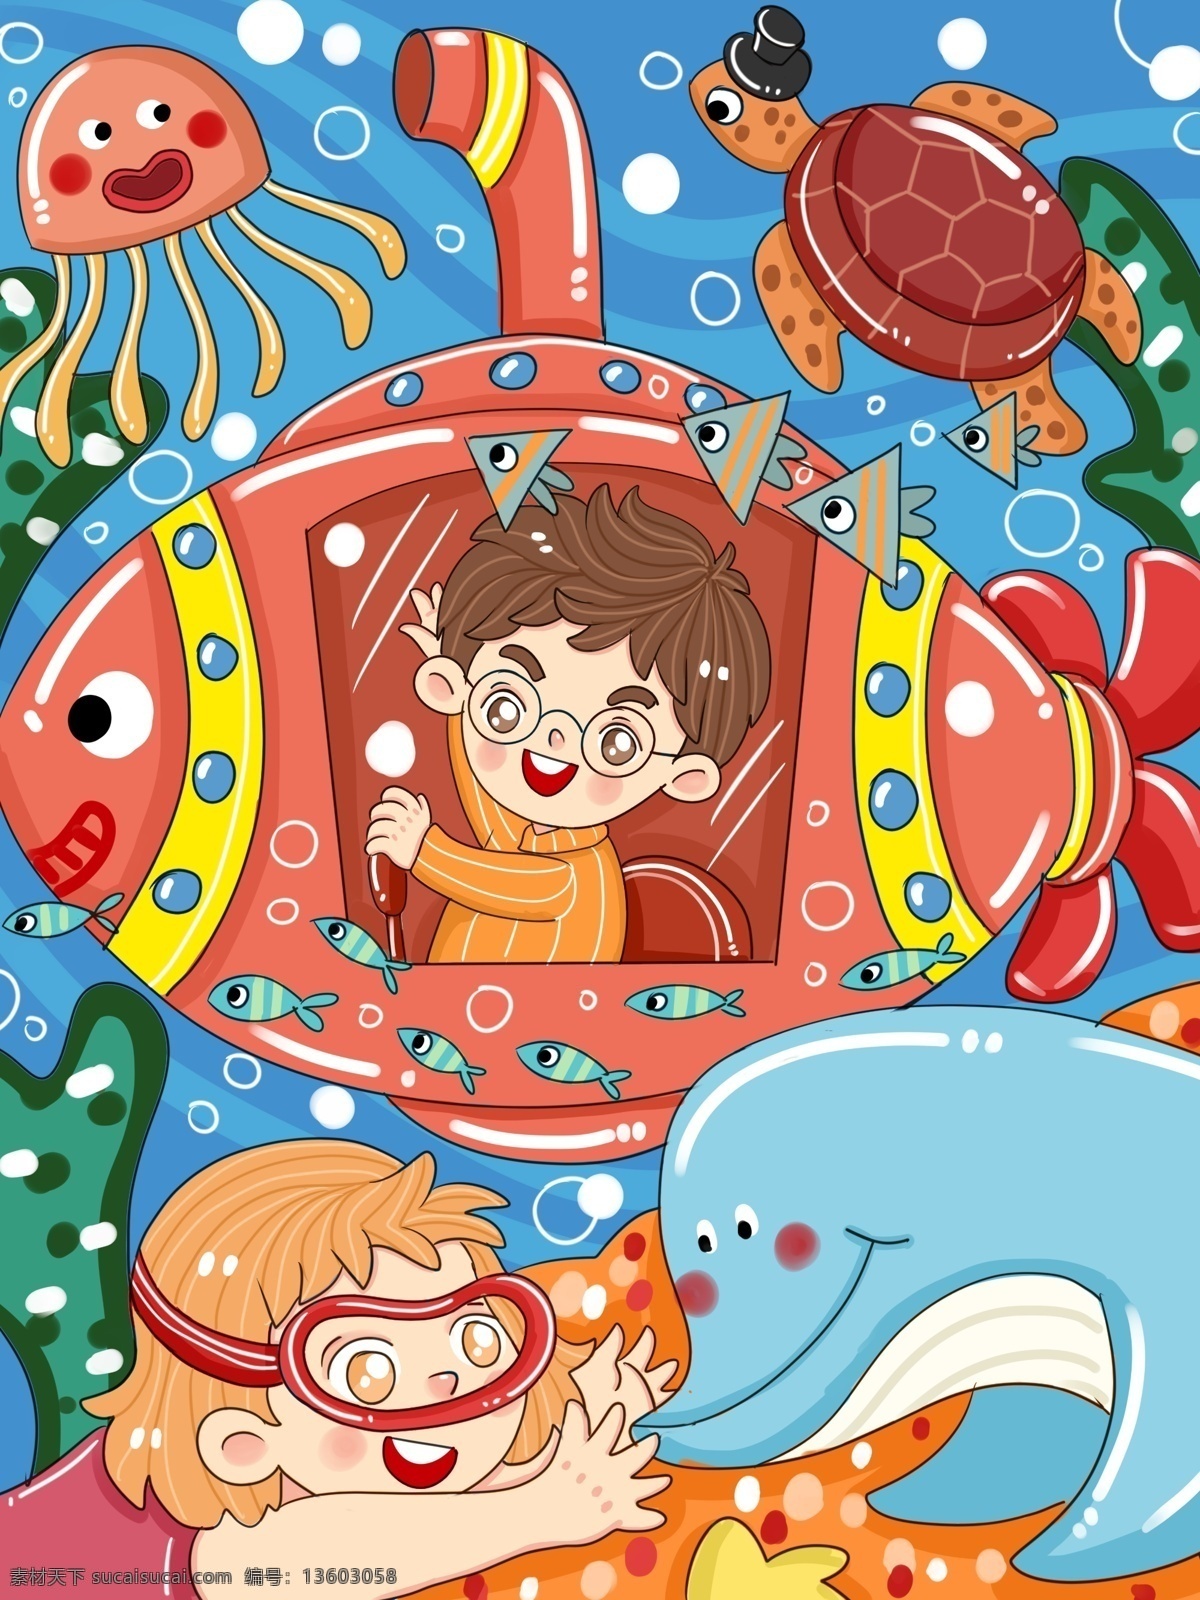 原创 卡通 世界 海洋 日 梦幻 海底 冒险 儿童 插画 世界海洋日 海洋日 海底世界 微博 微信 儿童插画